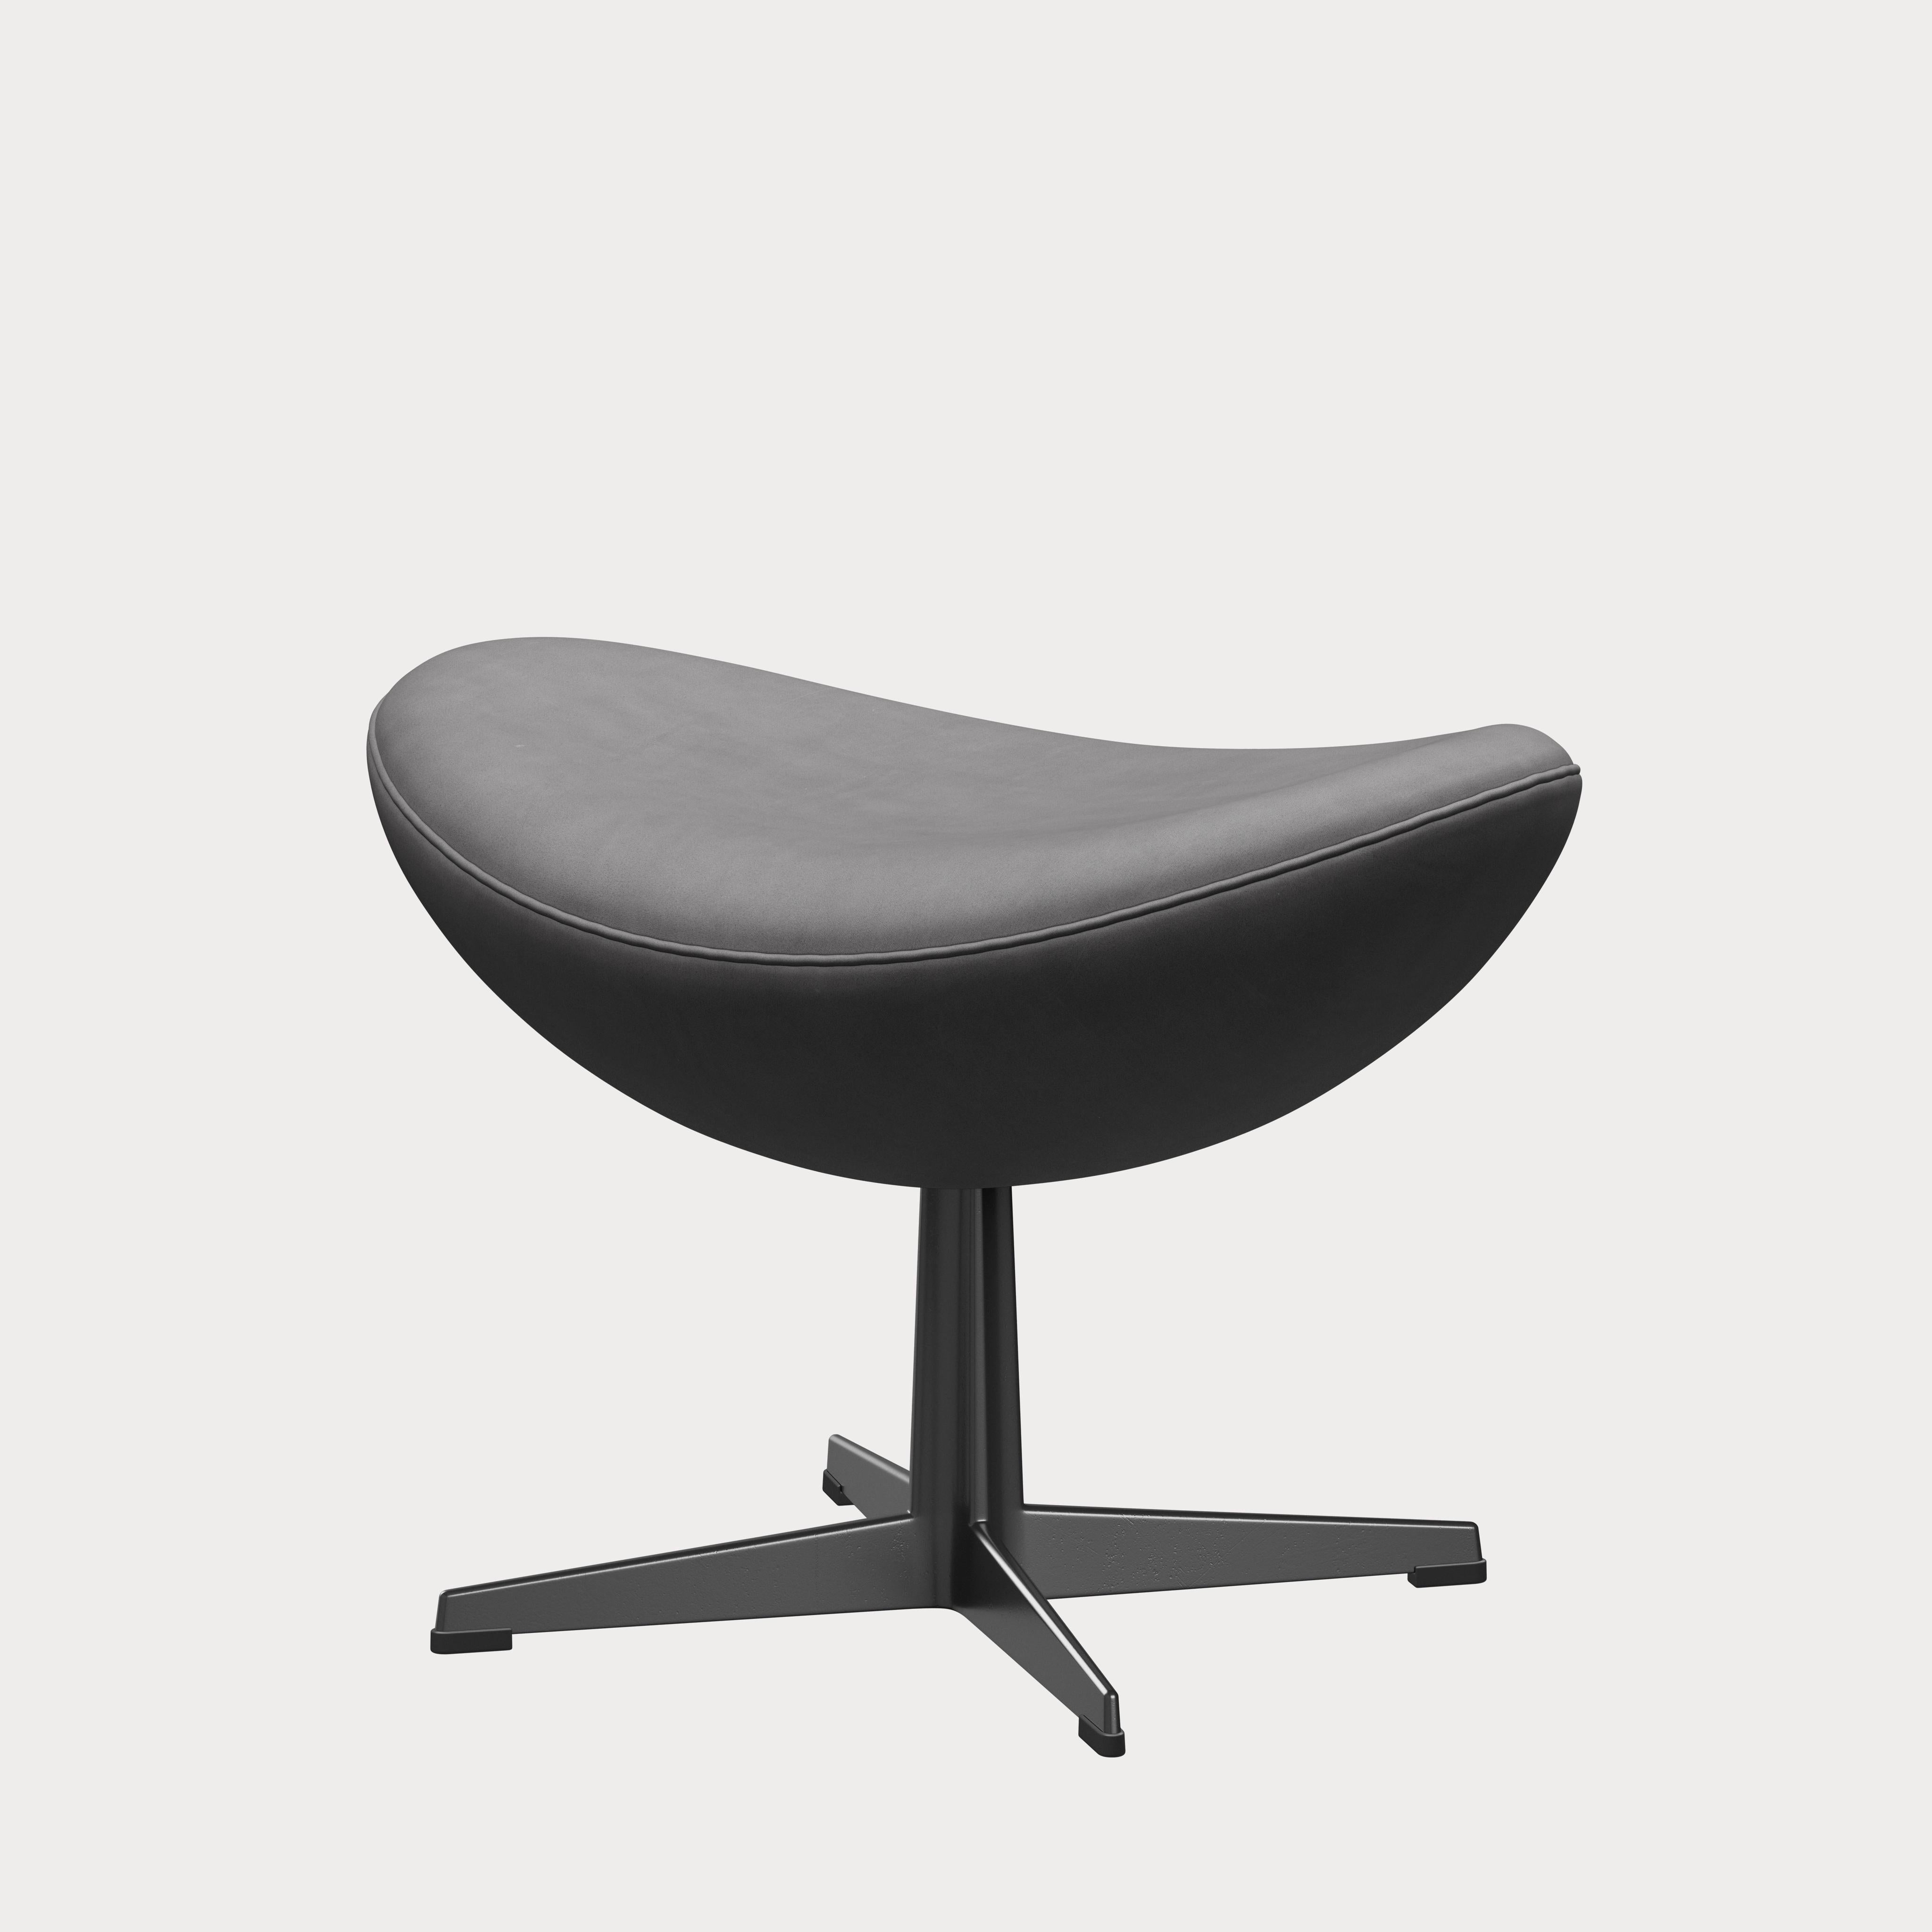 Arne Jacobsen 'Egg' Footstool for Fritz Hansen in Leather Upholstery (Cat. 5) For Sale 3